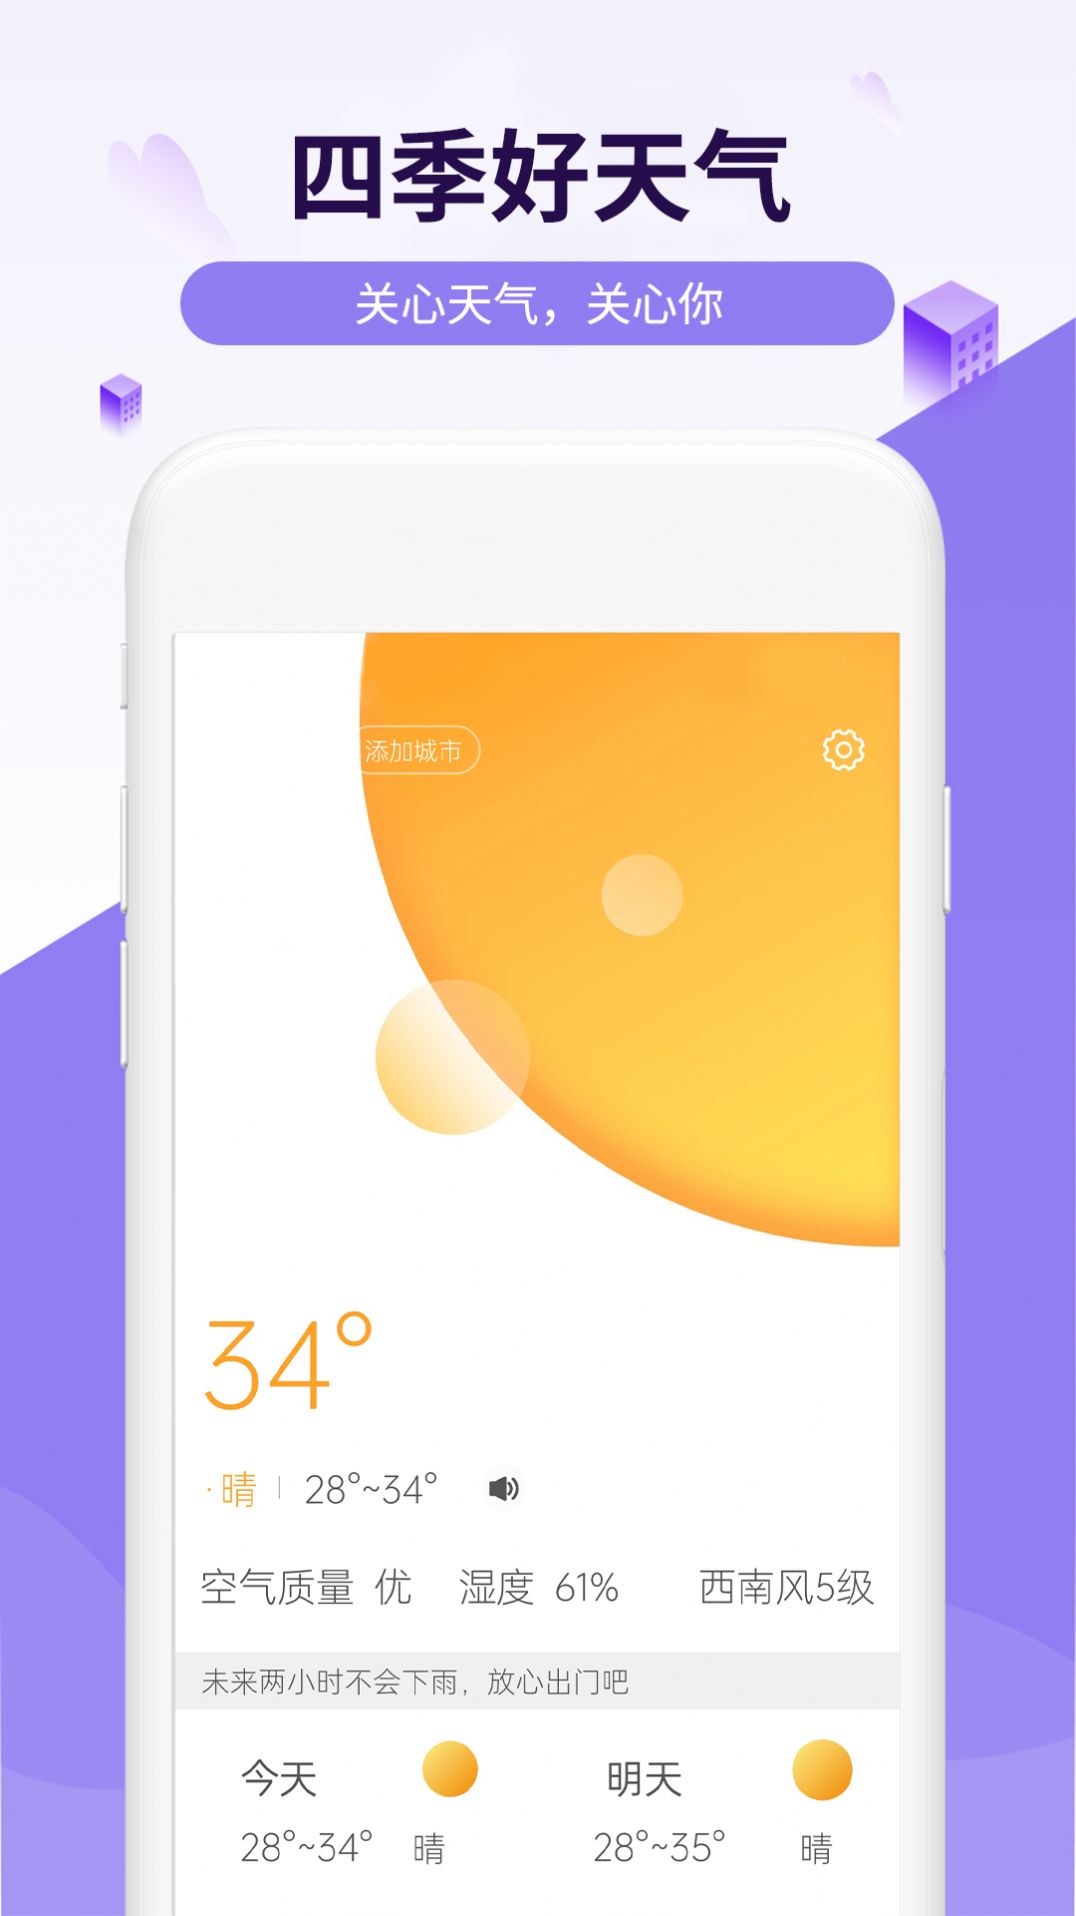 四季好天气杭州上门app开发